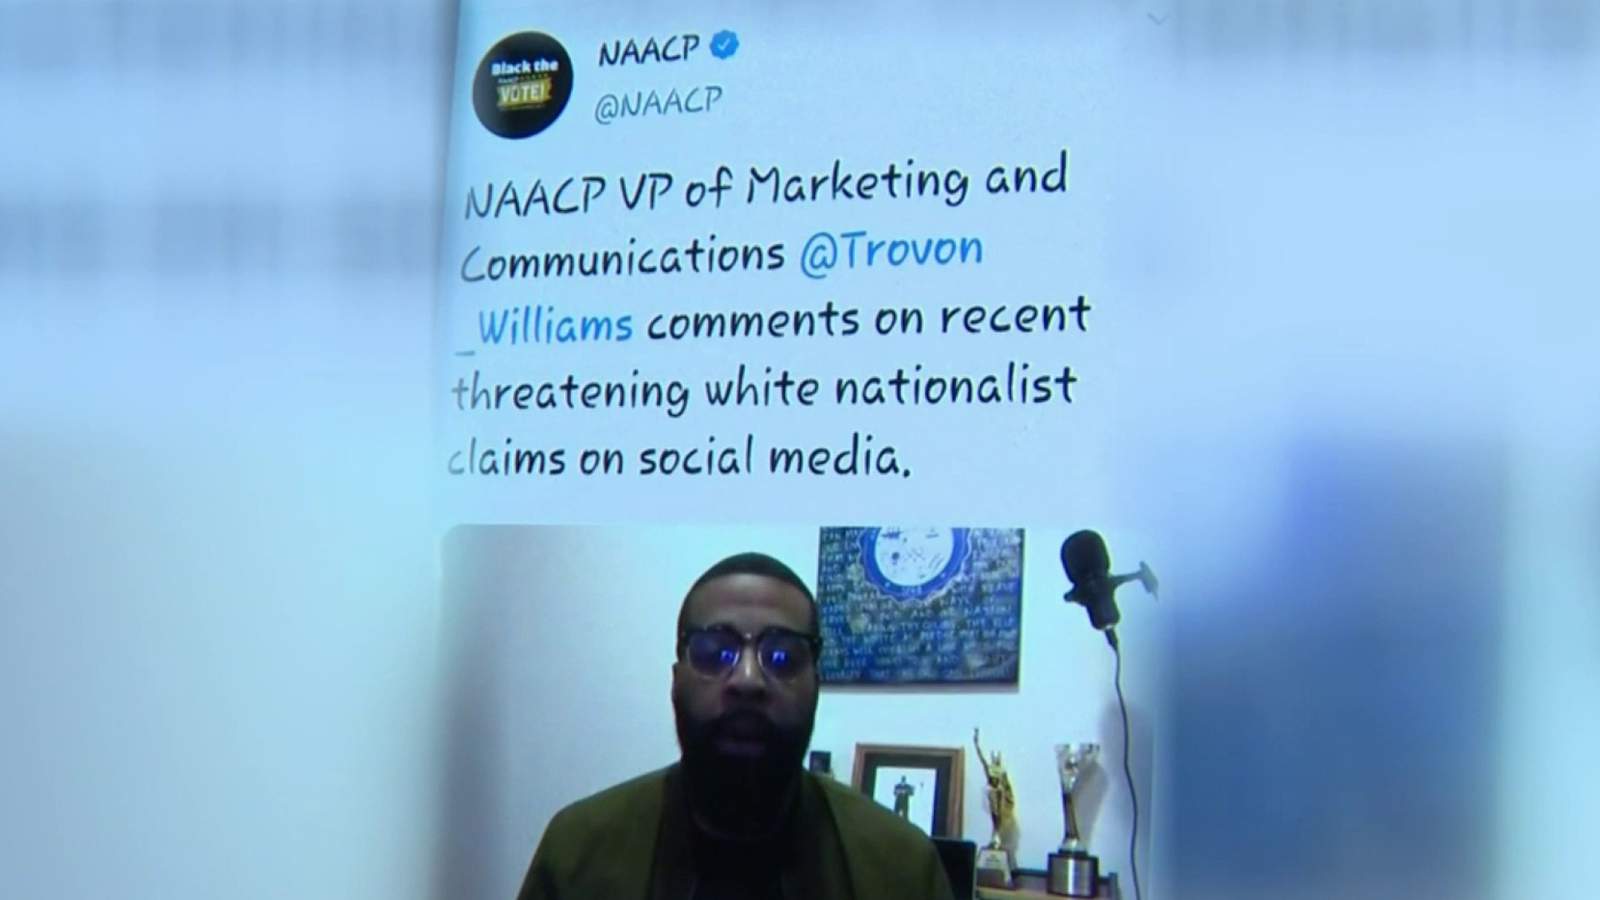 Viral warning of threats of violence isn’t real, NAACP says